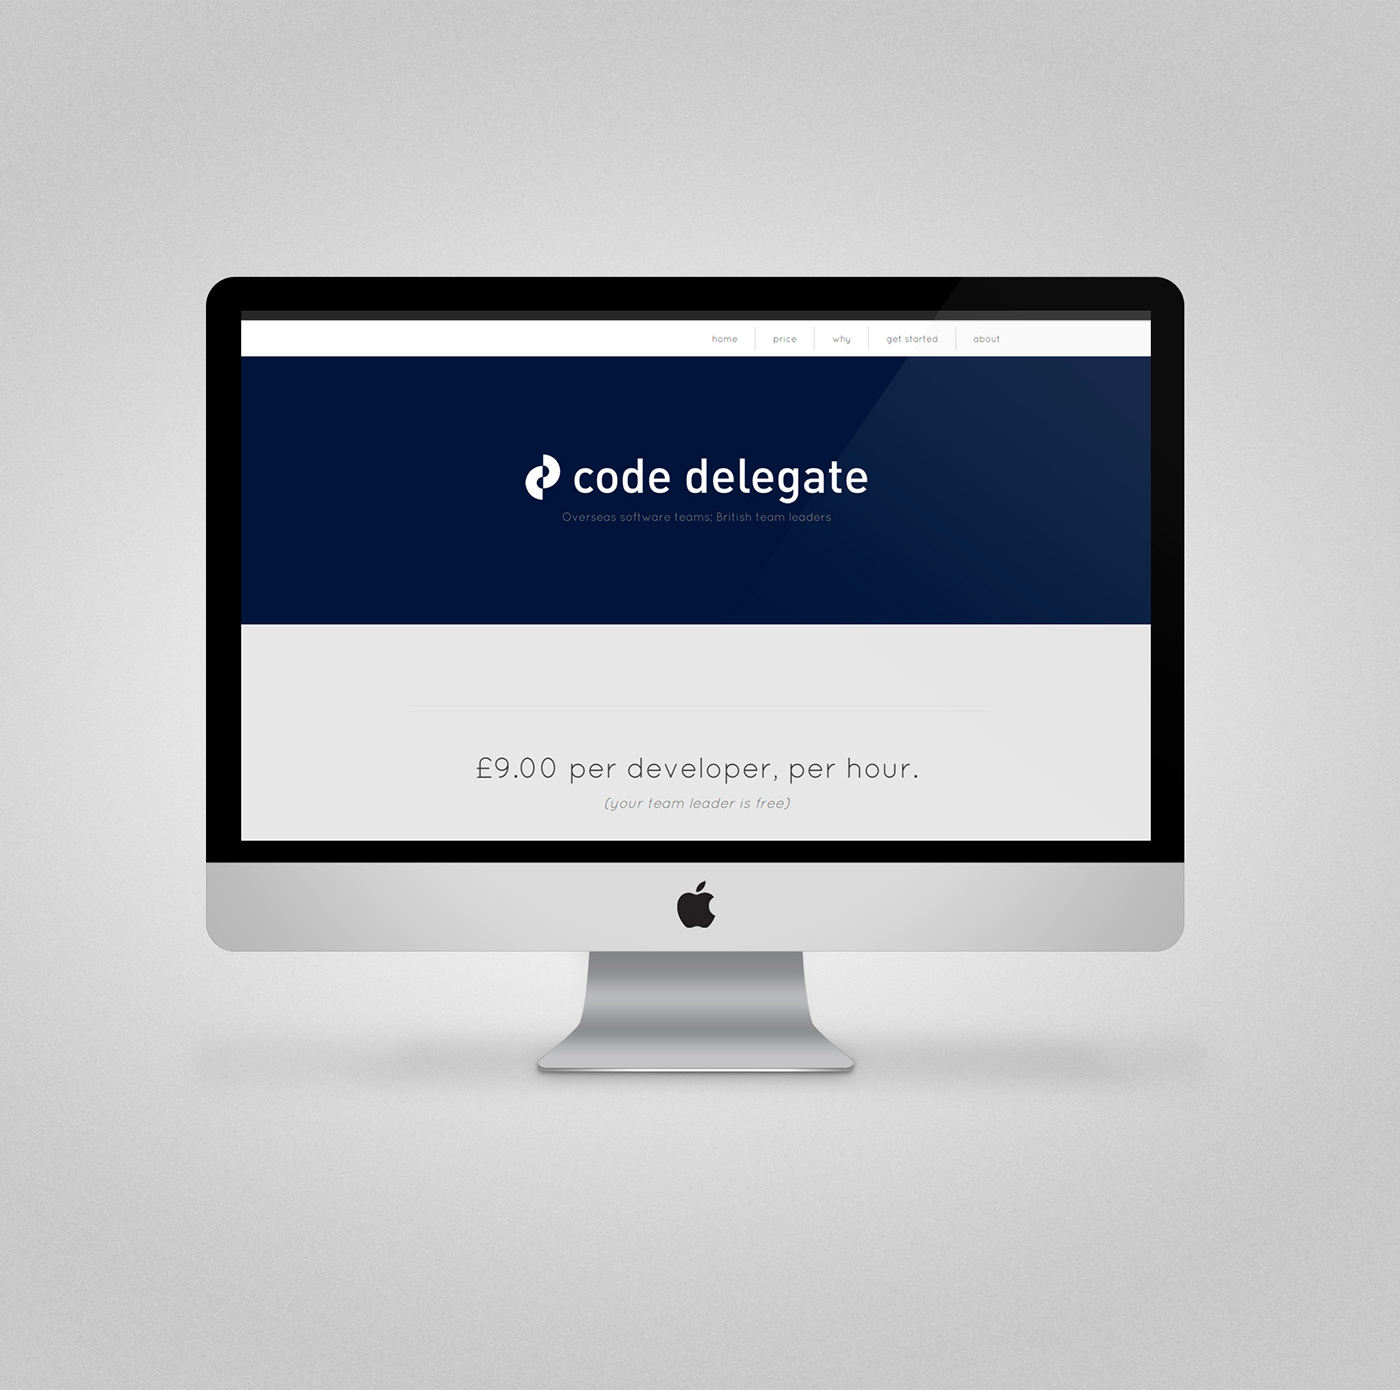 codedelegate code delegate design software UK flat design flat